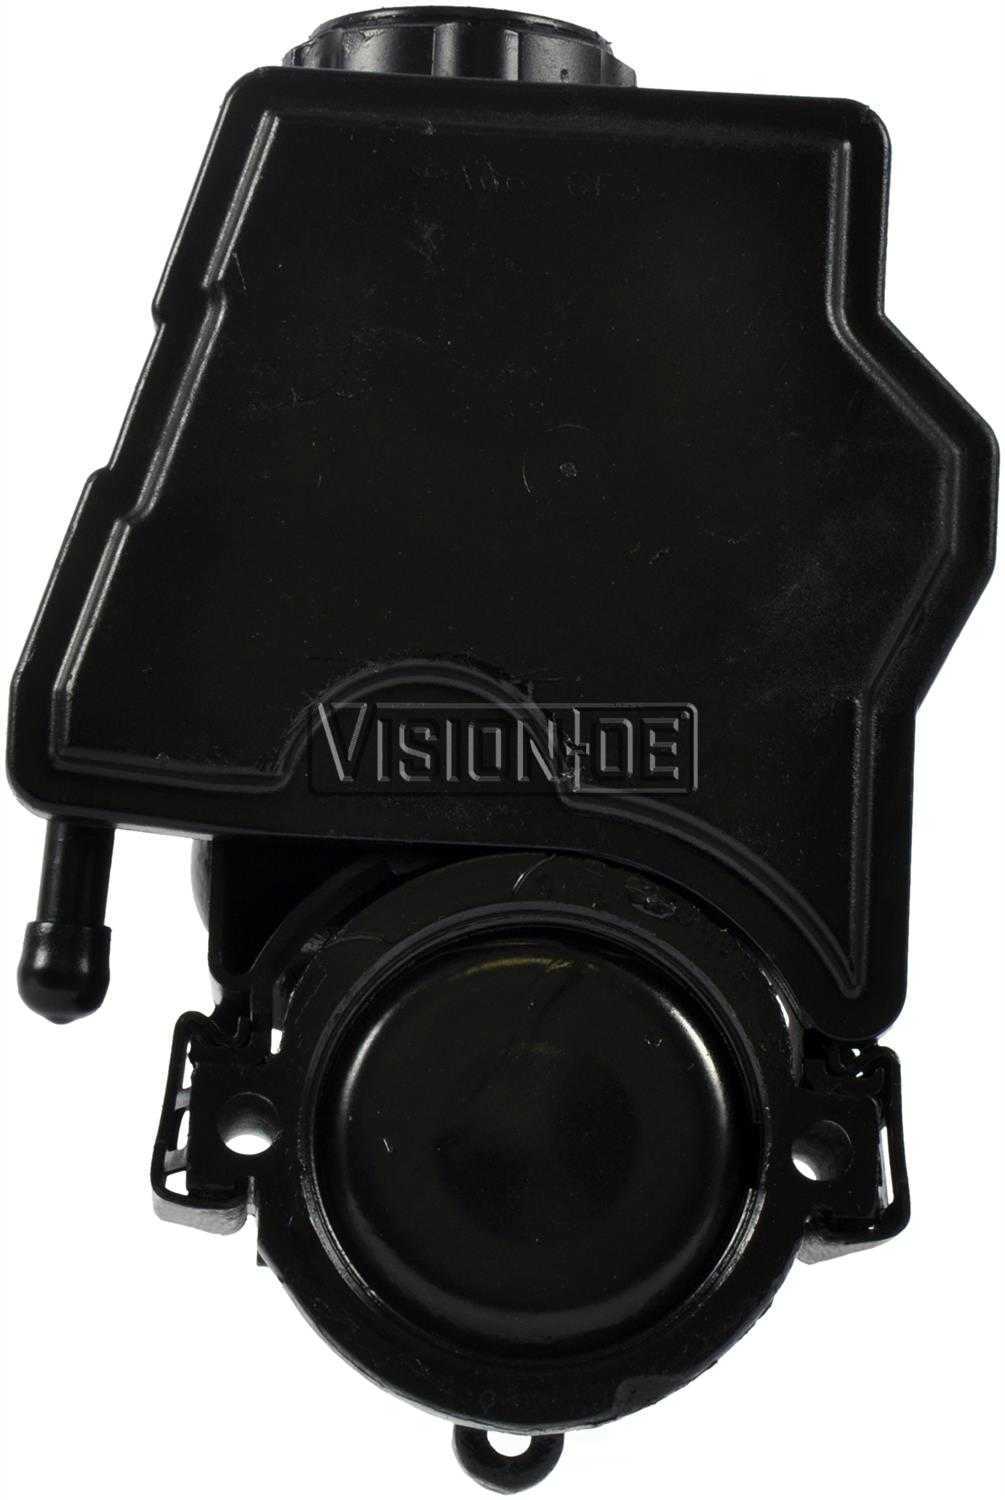 VISION-OE - Reman Power Steering Pump - VOE 734-77119